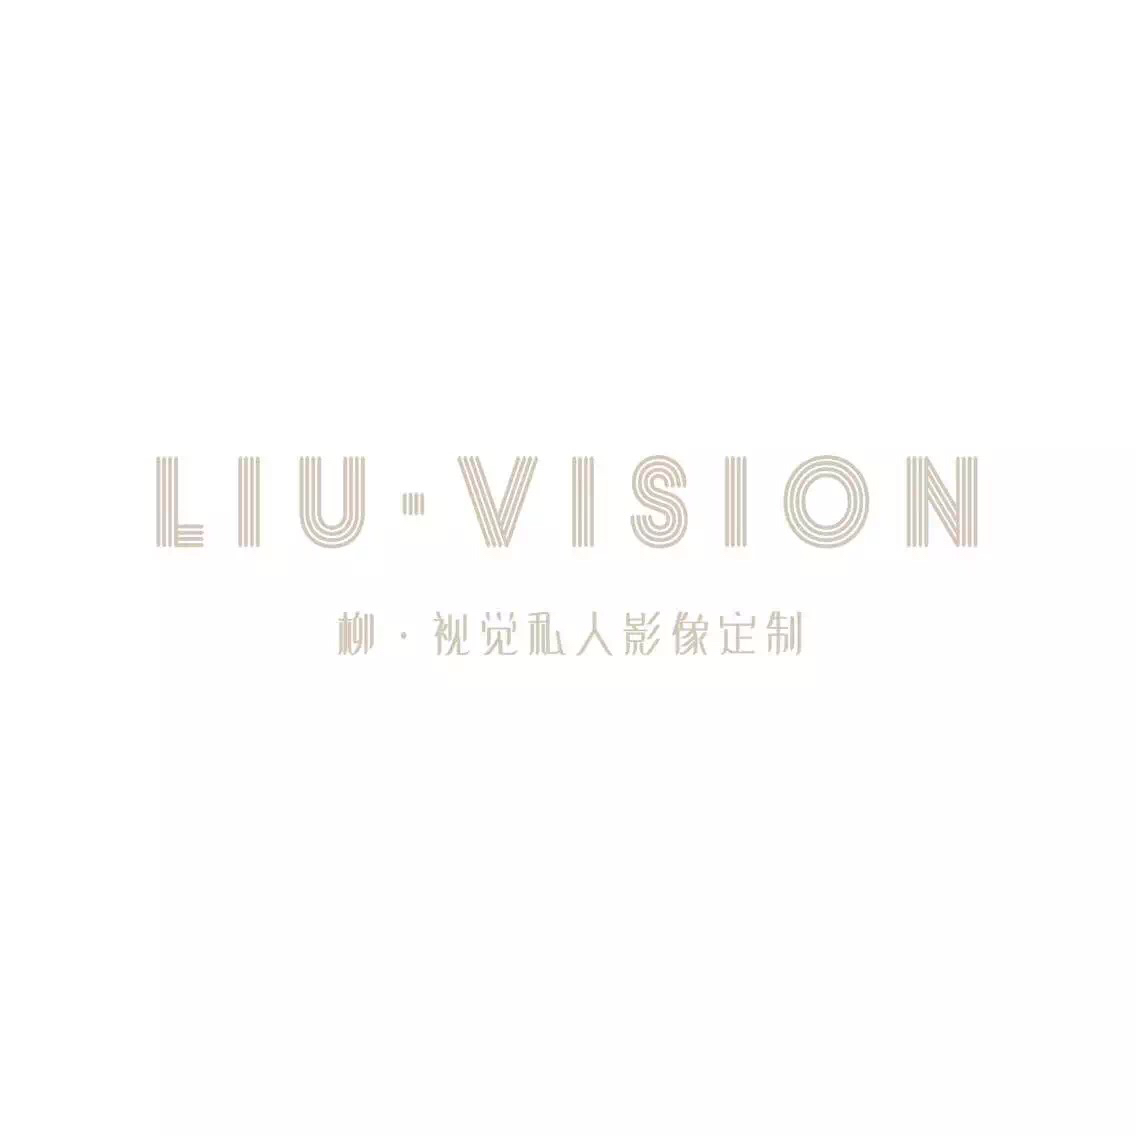 LIU·VISION私人影像定制